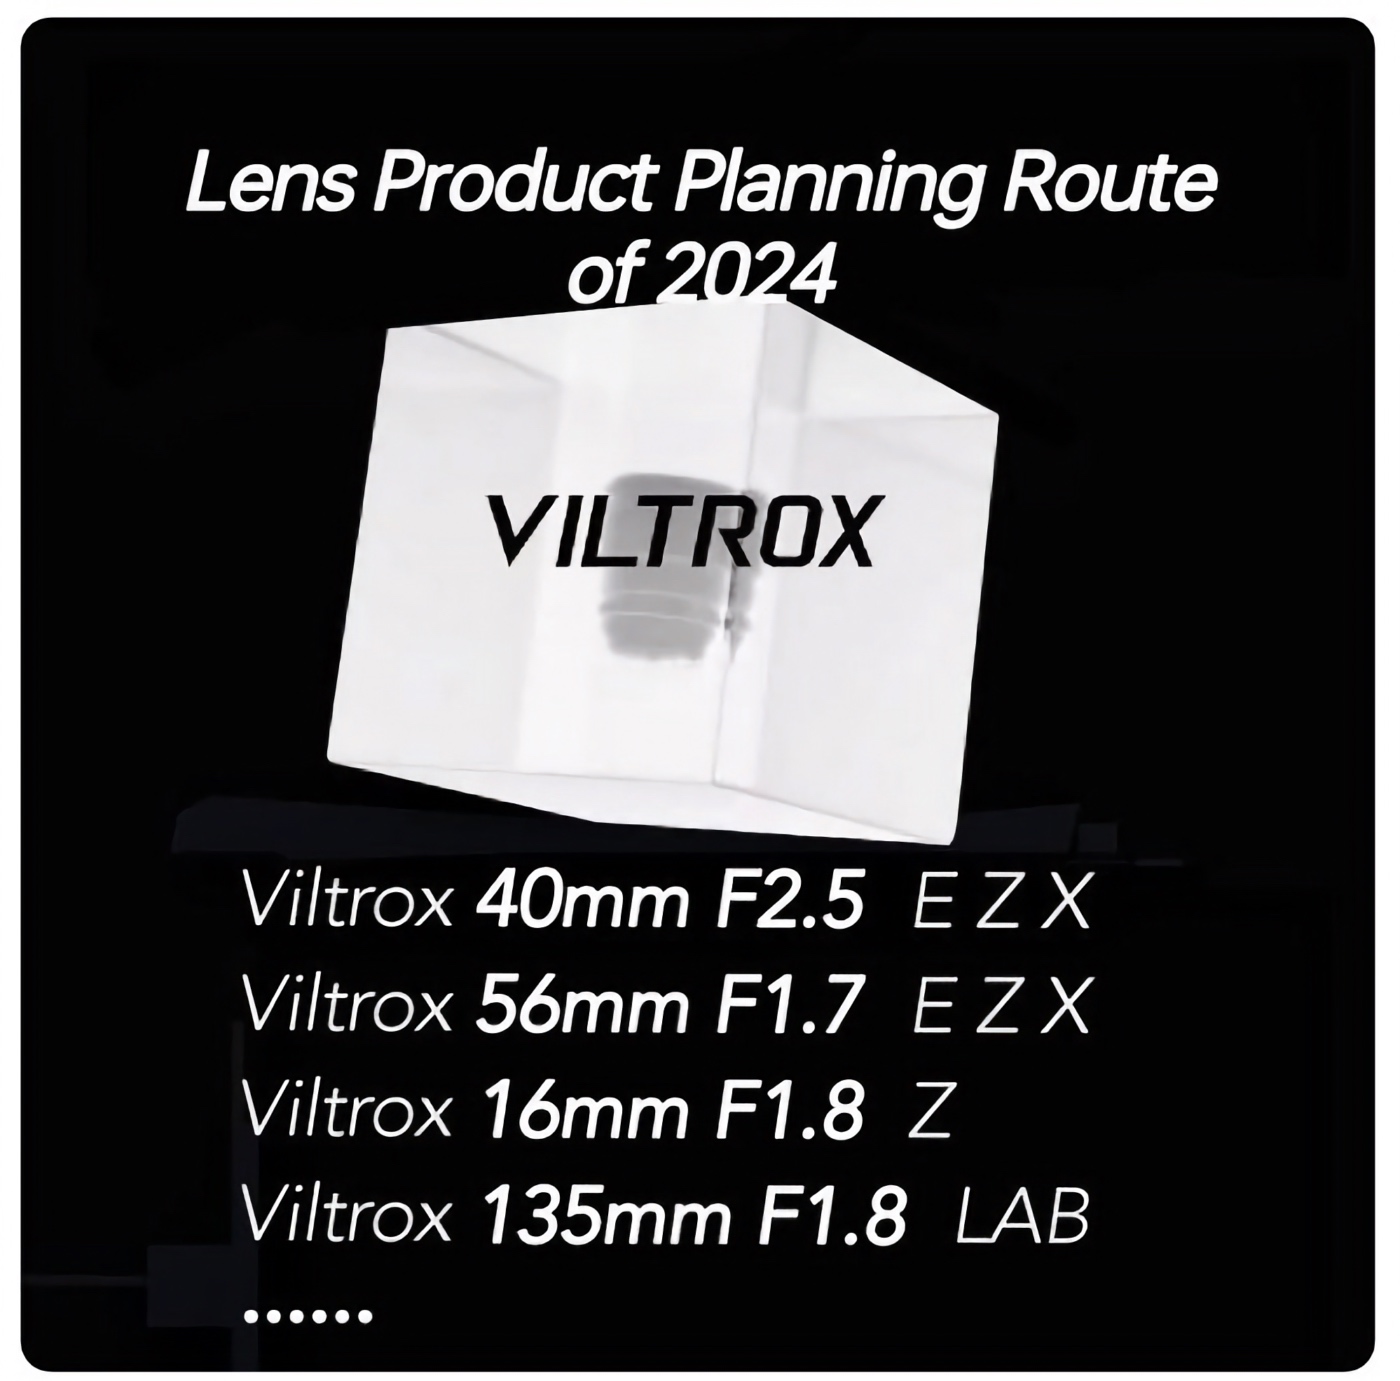 Rumeur Vitrox 2024 roadmap